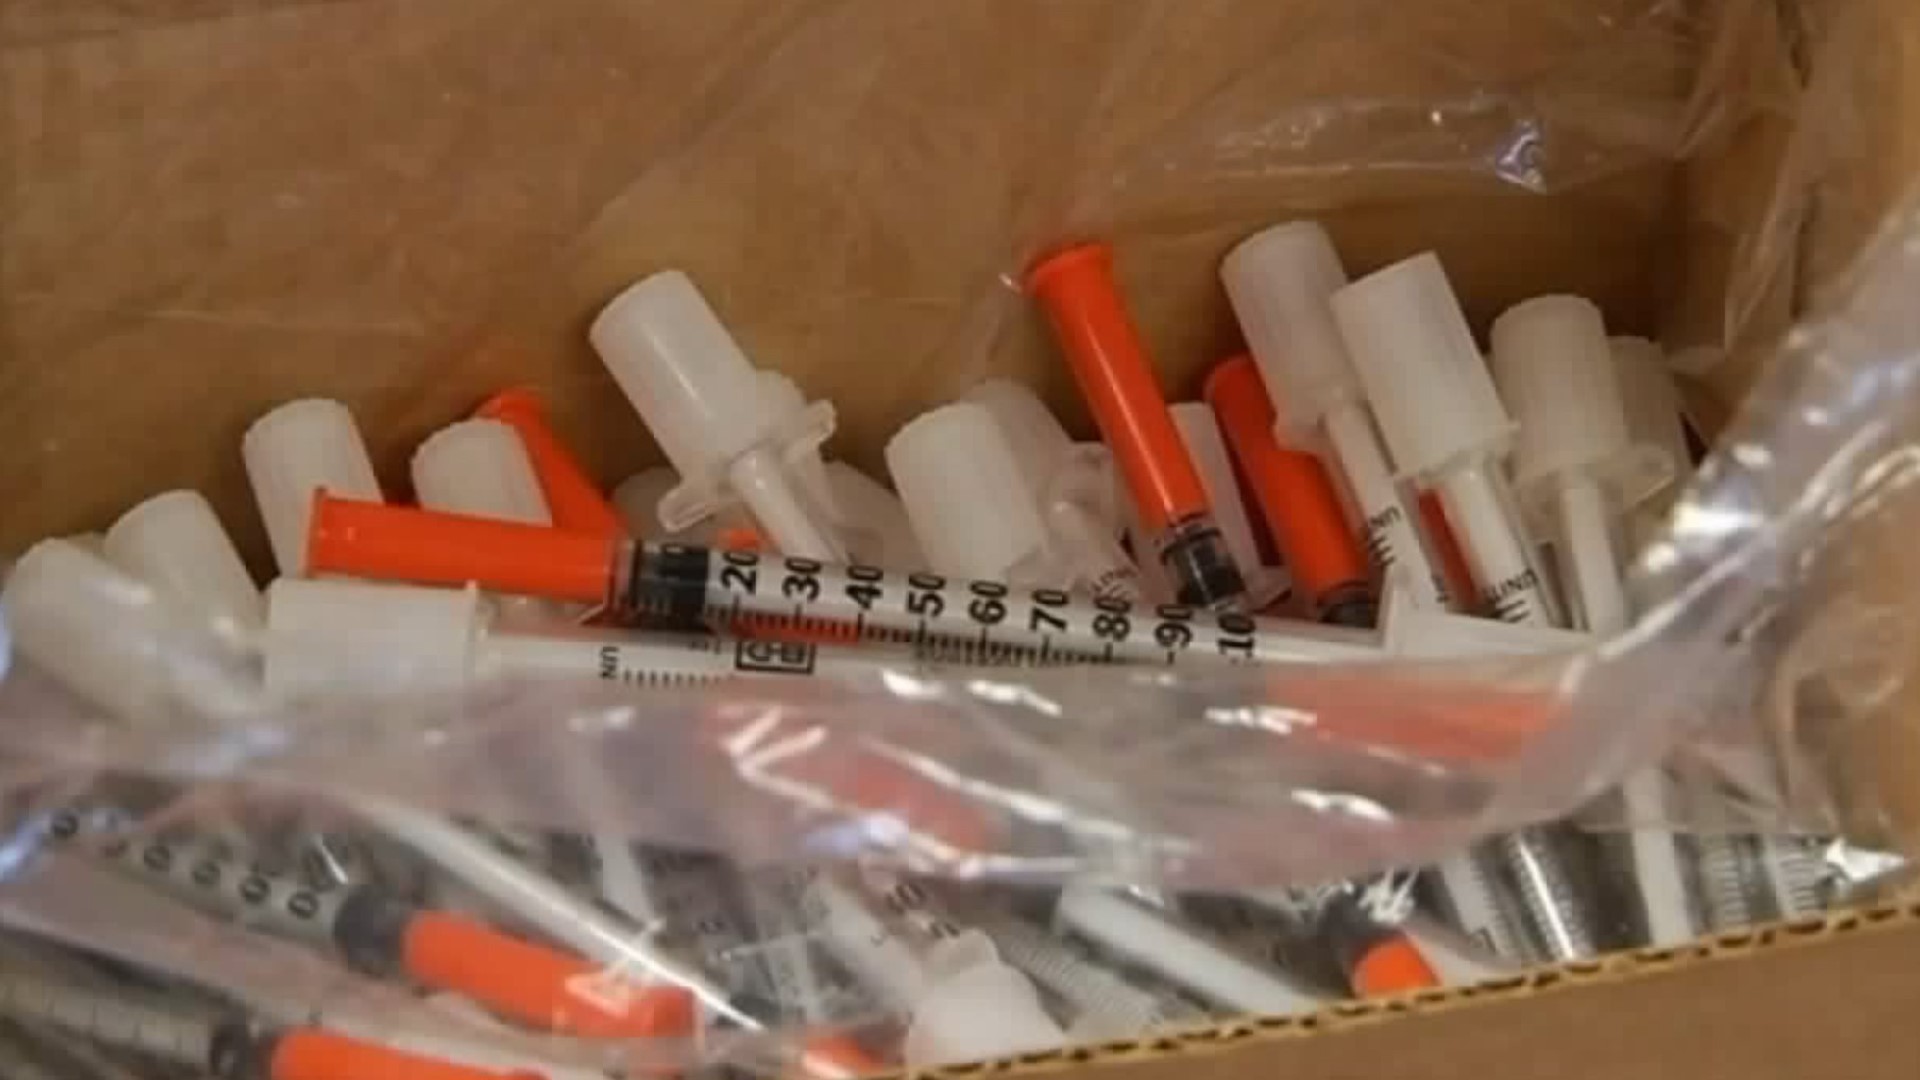 Needle syringe exchange programs